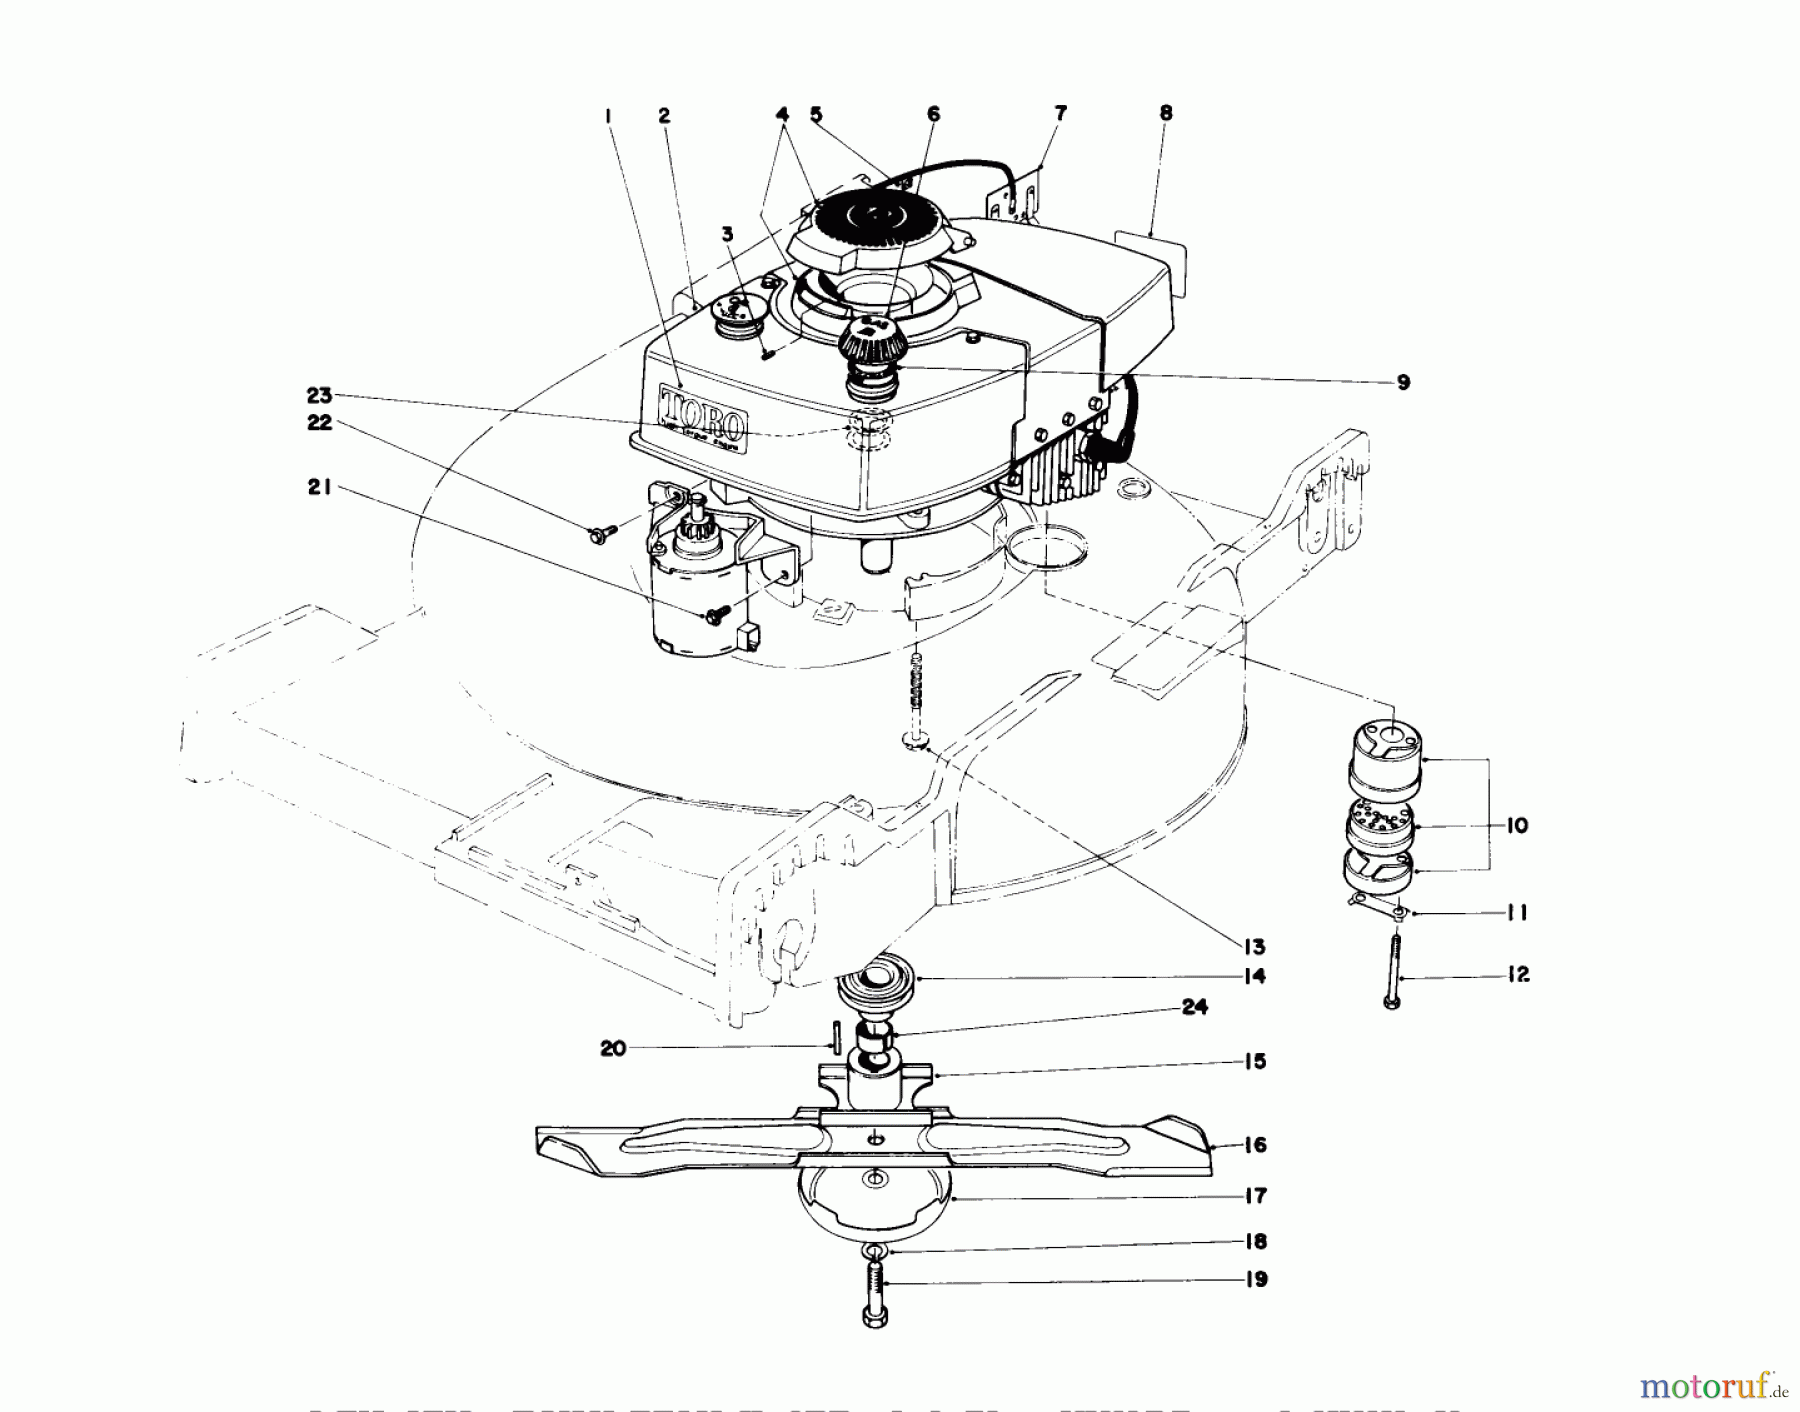  Toro Neu Mowers, Walk-Behind Seite 1 20657 - Toro Lawnmower, 1977 (7000001-7999999) ENGINE ASSEMBLY (MODEL NO. 20644 AND 20657)